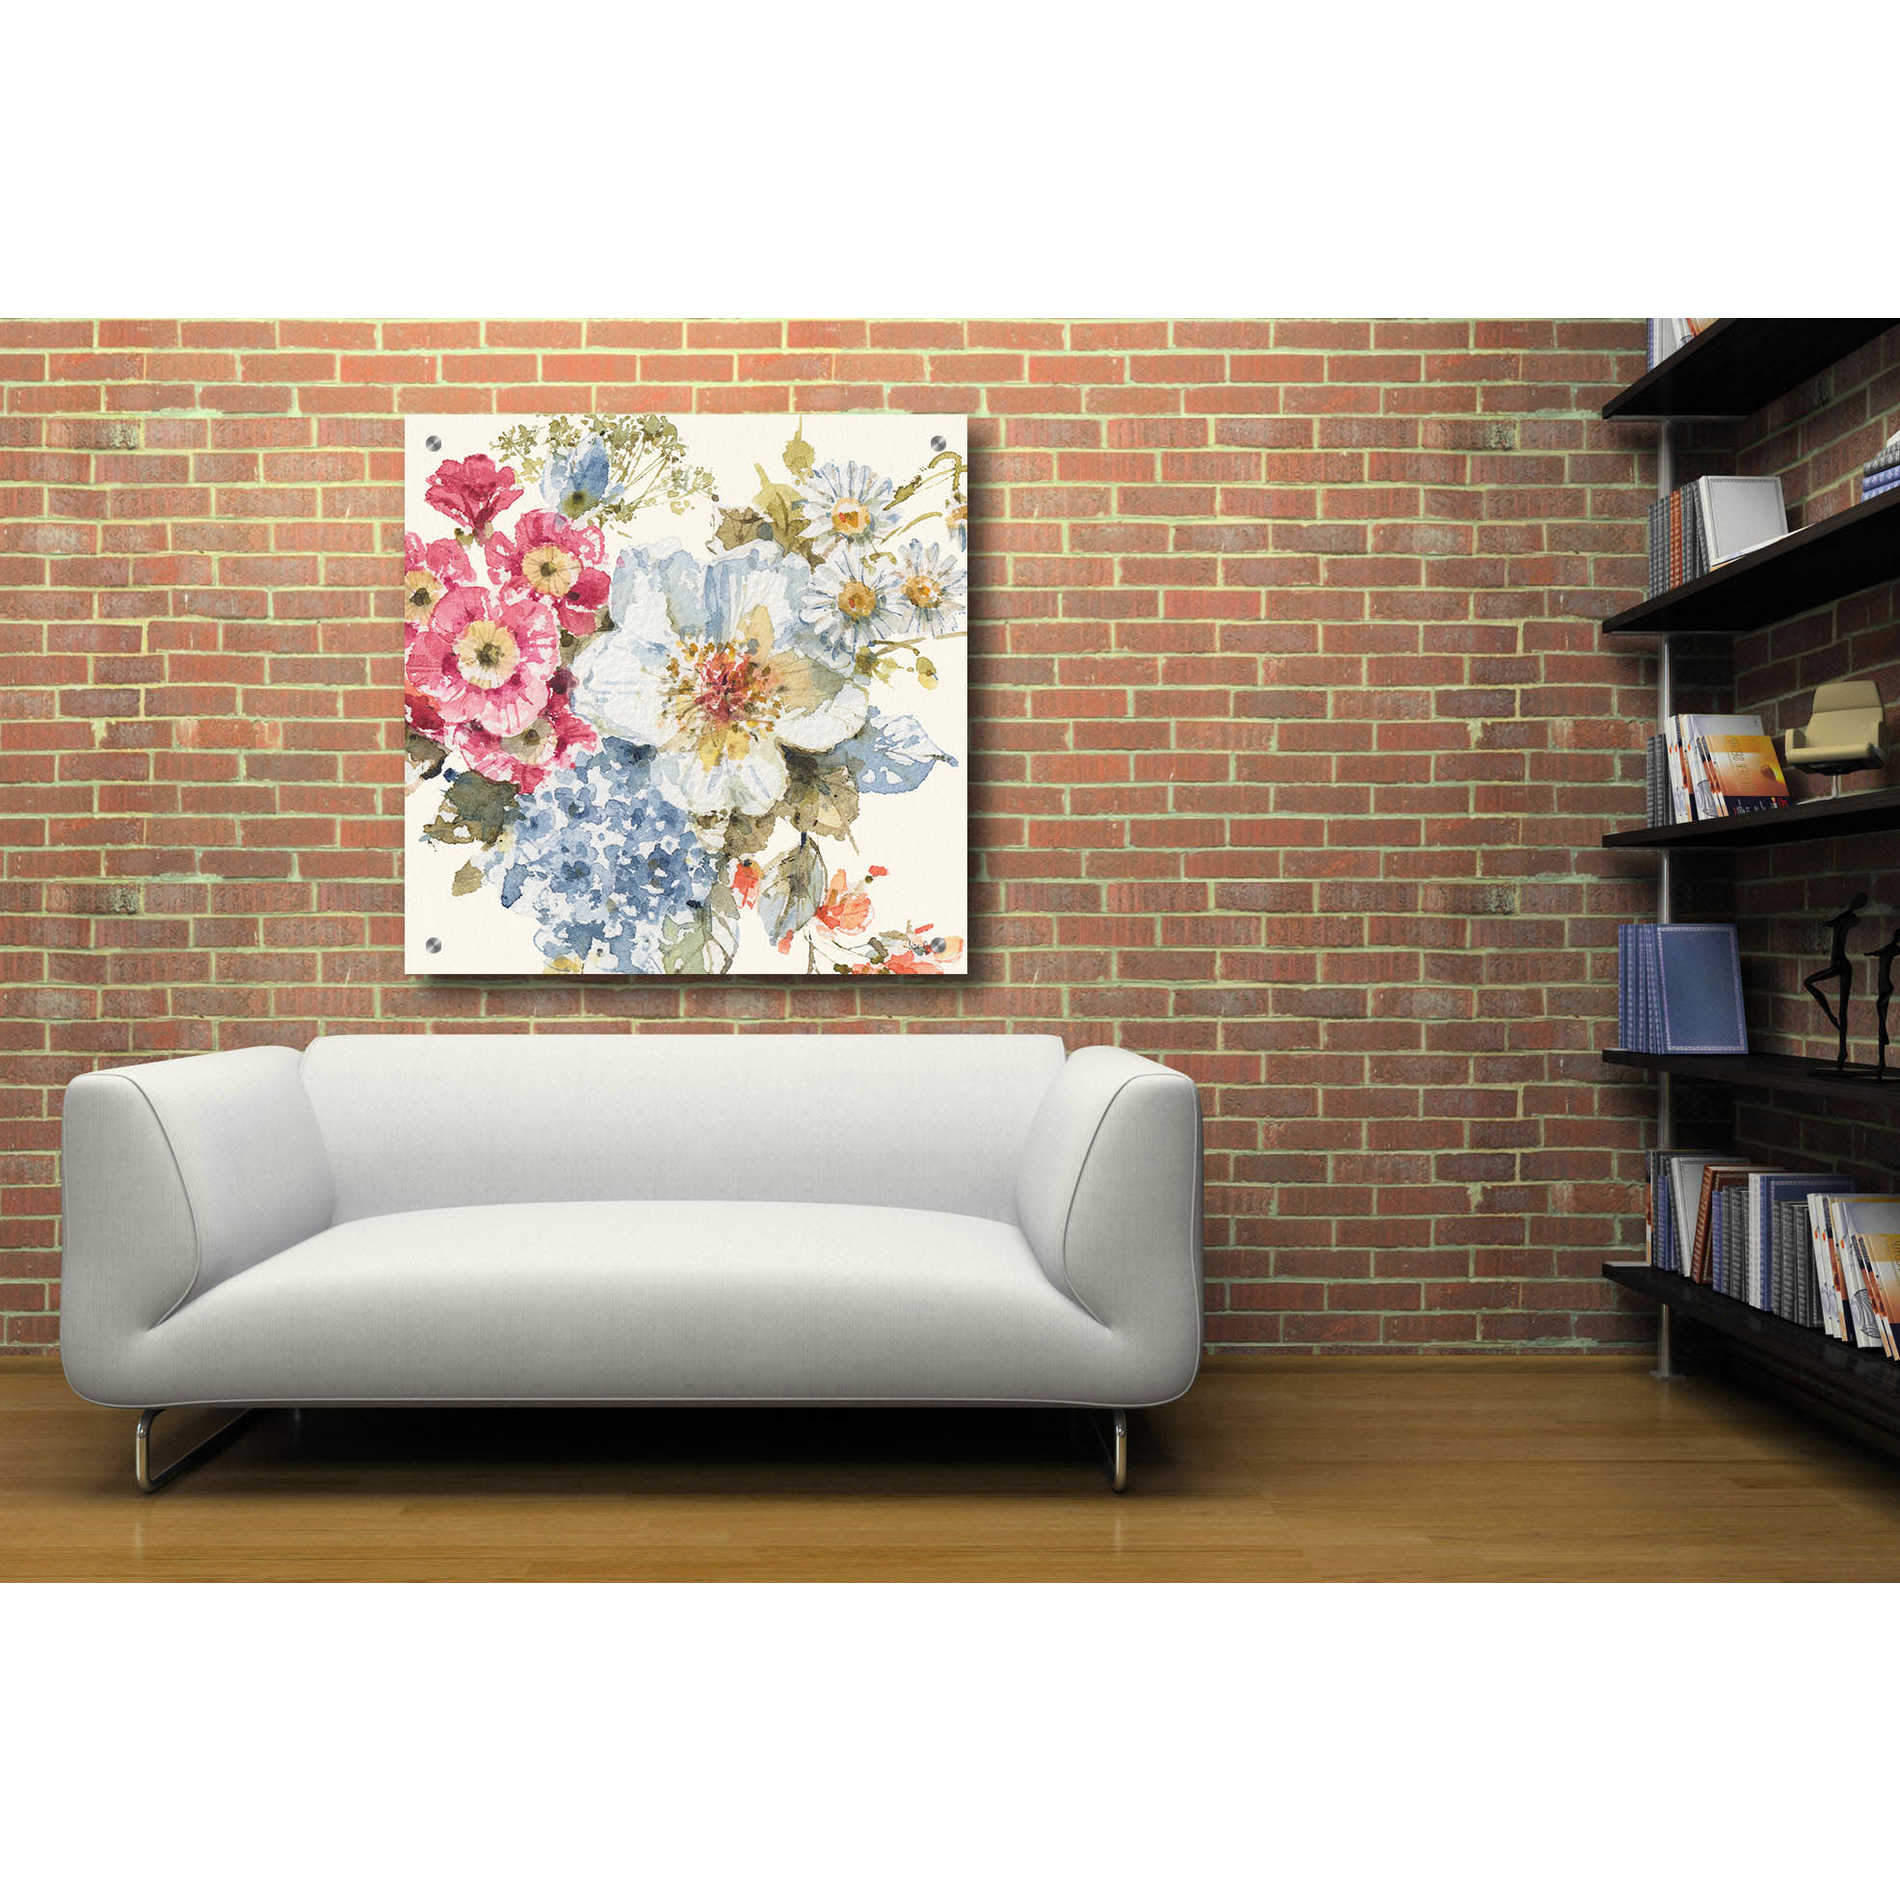 Epic Art 'Summer Garden III' by Lisa Audit, Acrylic Glass Wall Art,36x36